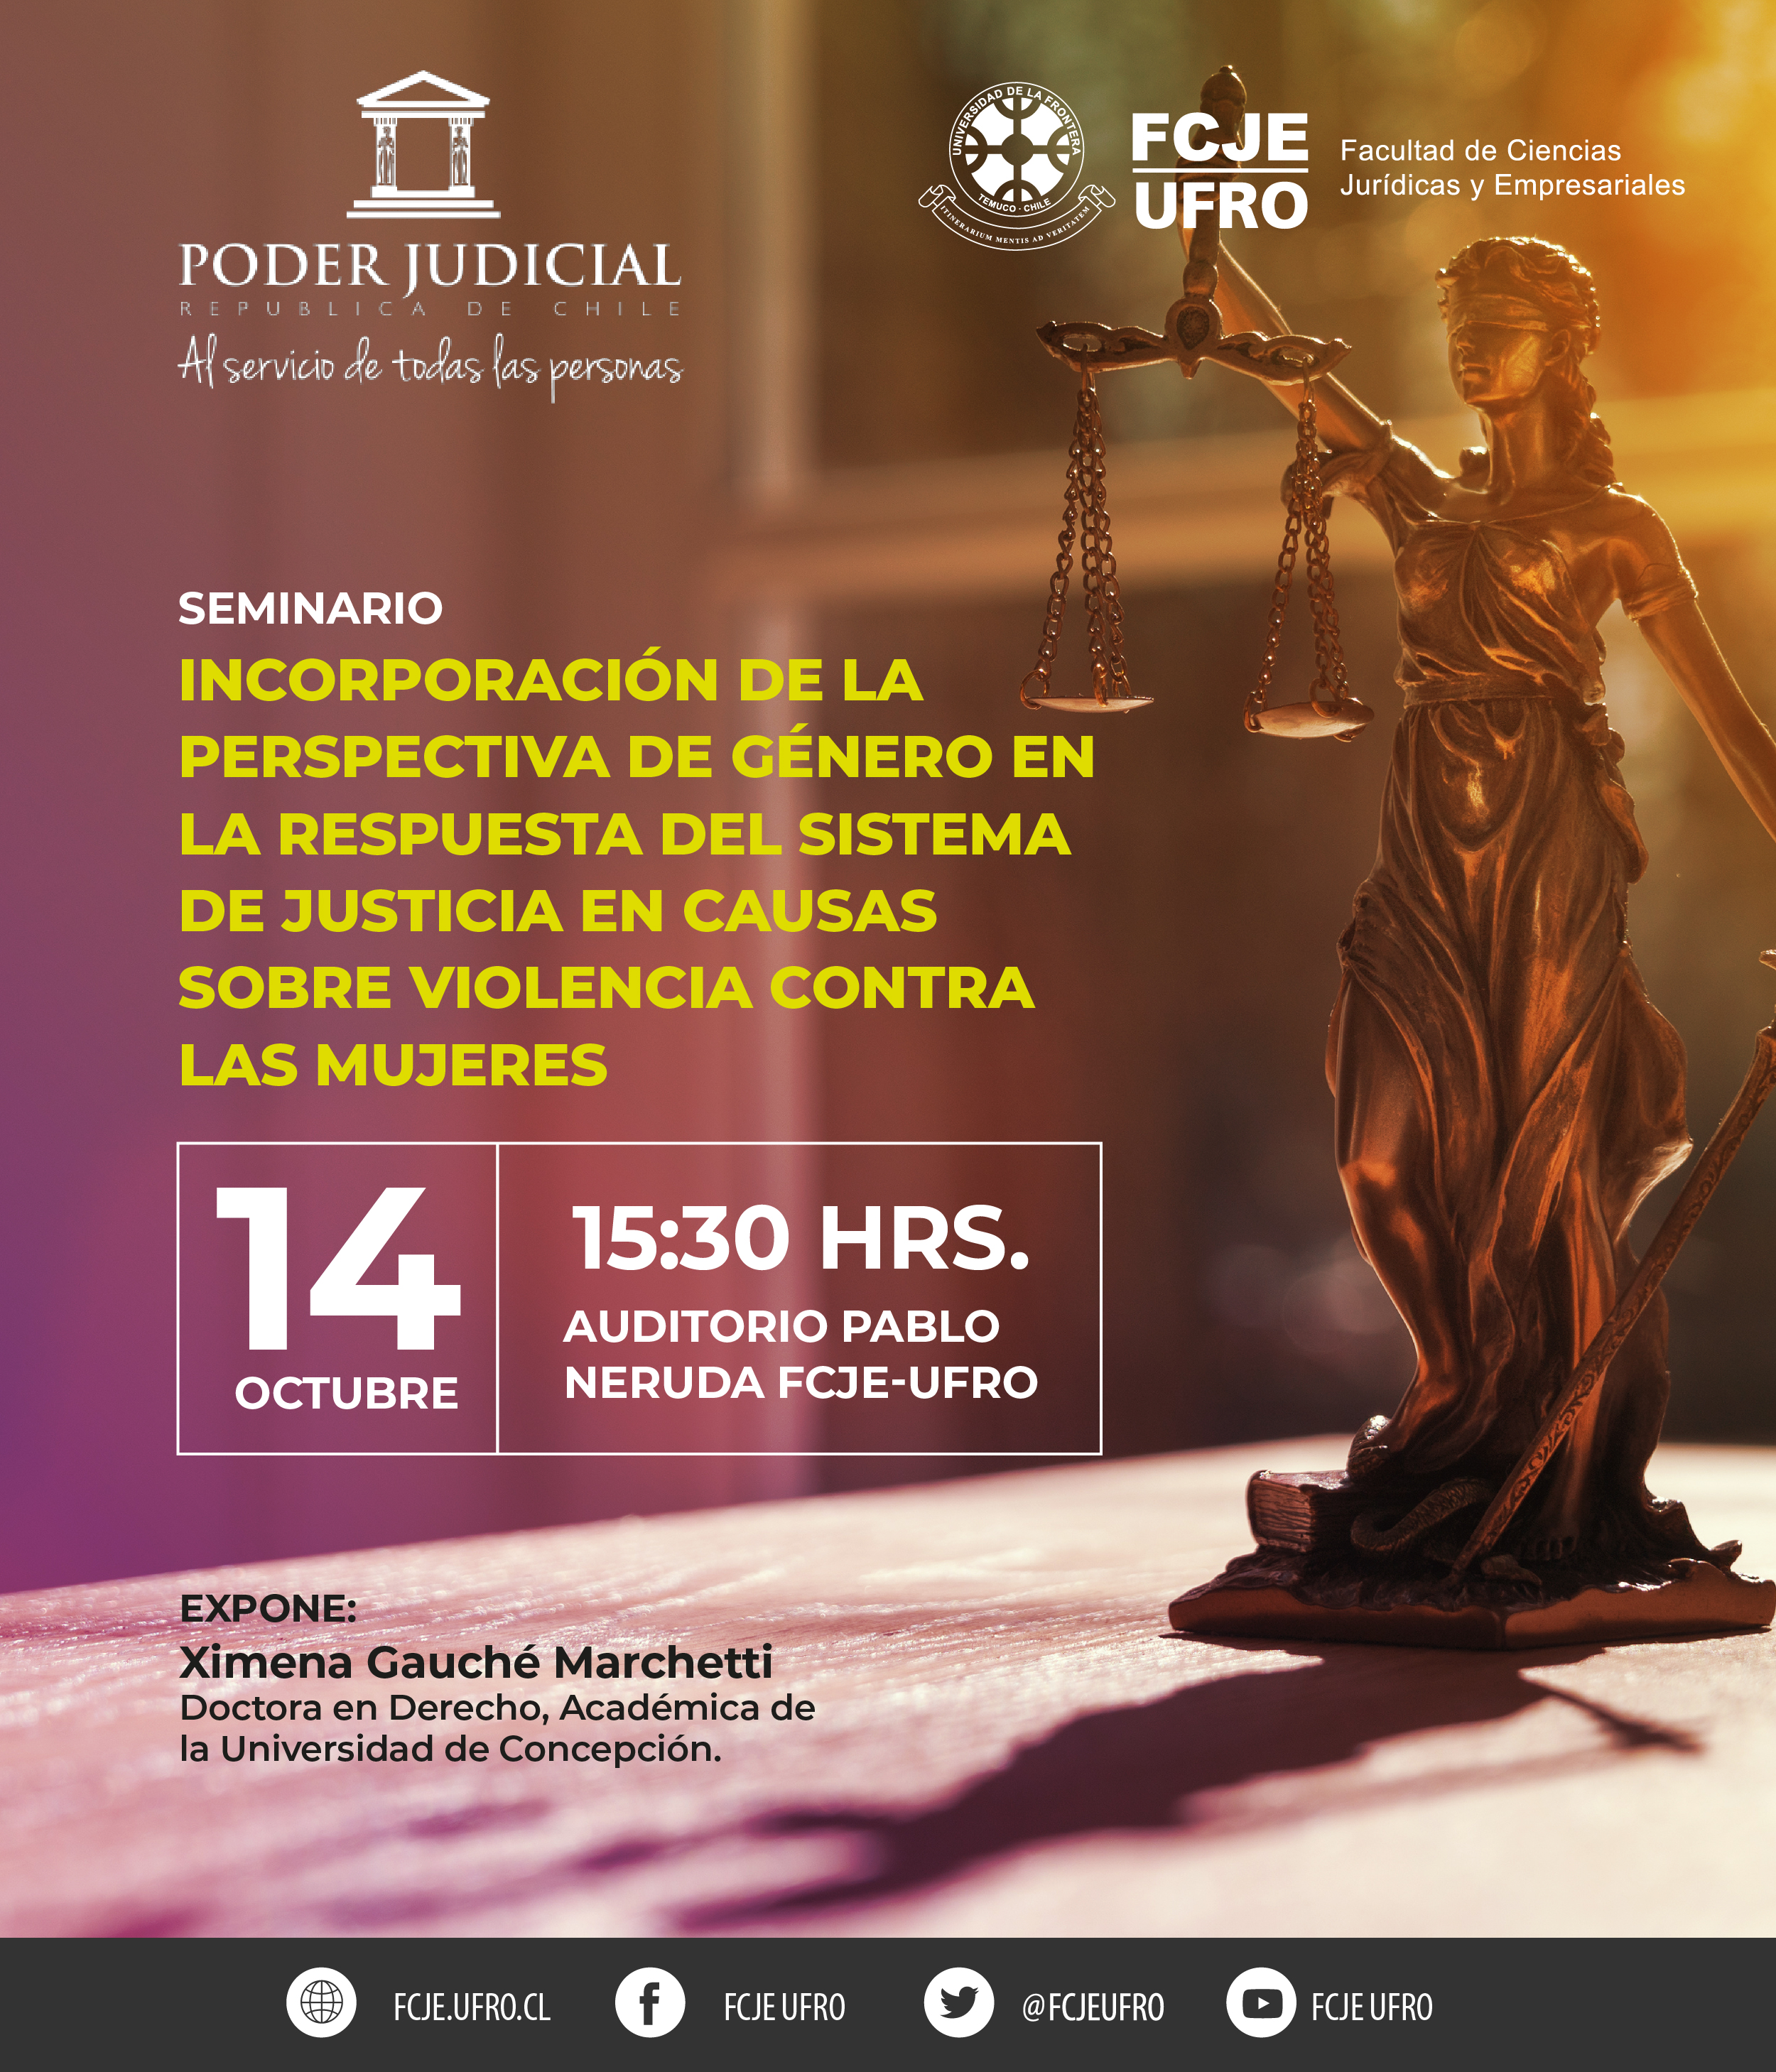 Ministra Cecilia Aravena invita a Seminario sobre la incorporación de la perspectiva de género en causas de violencia contra las mujeres.